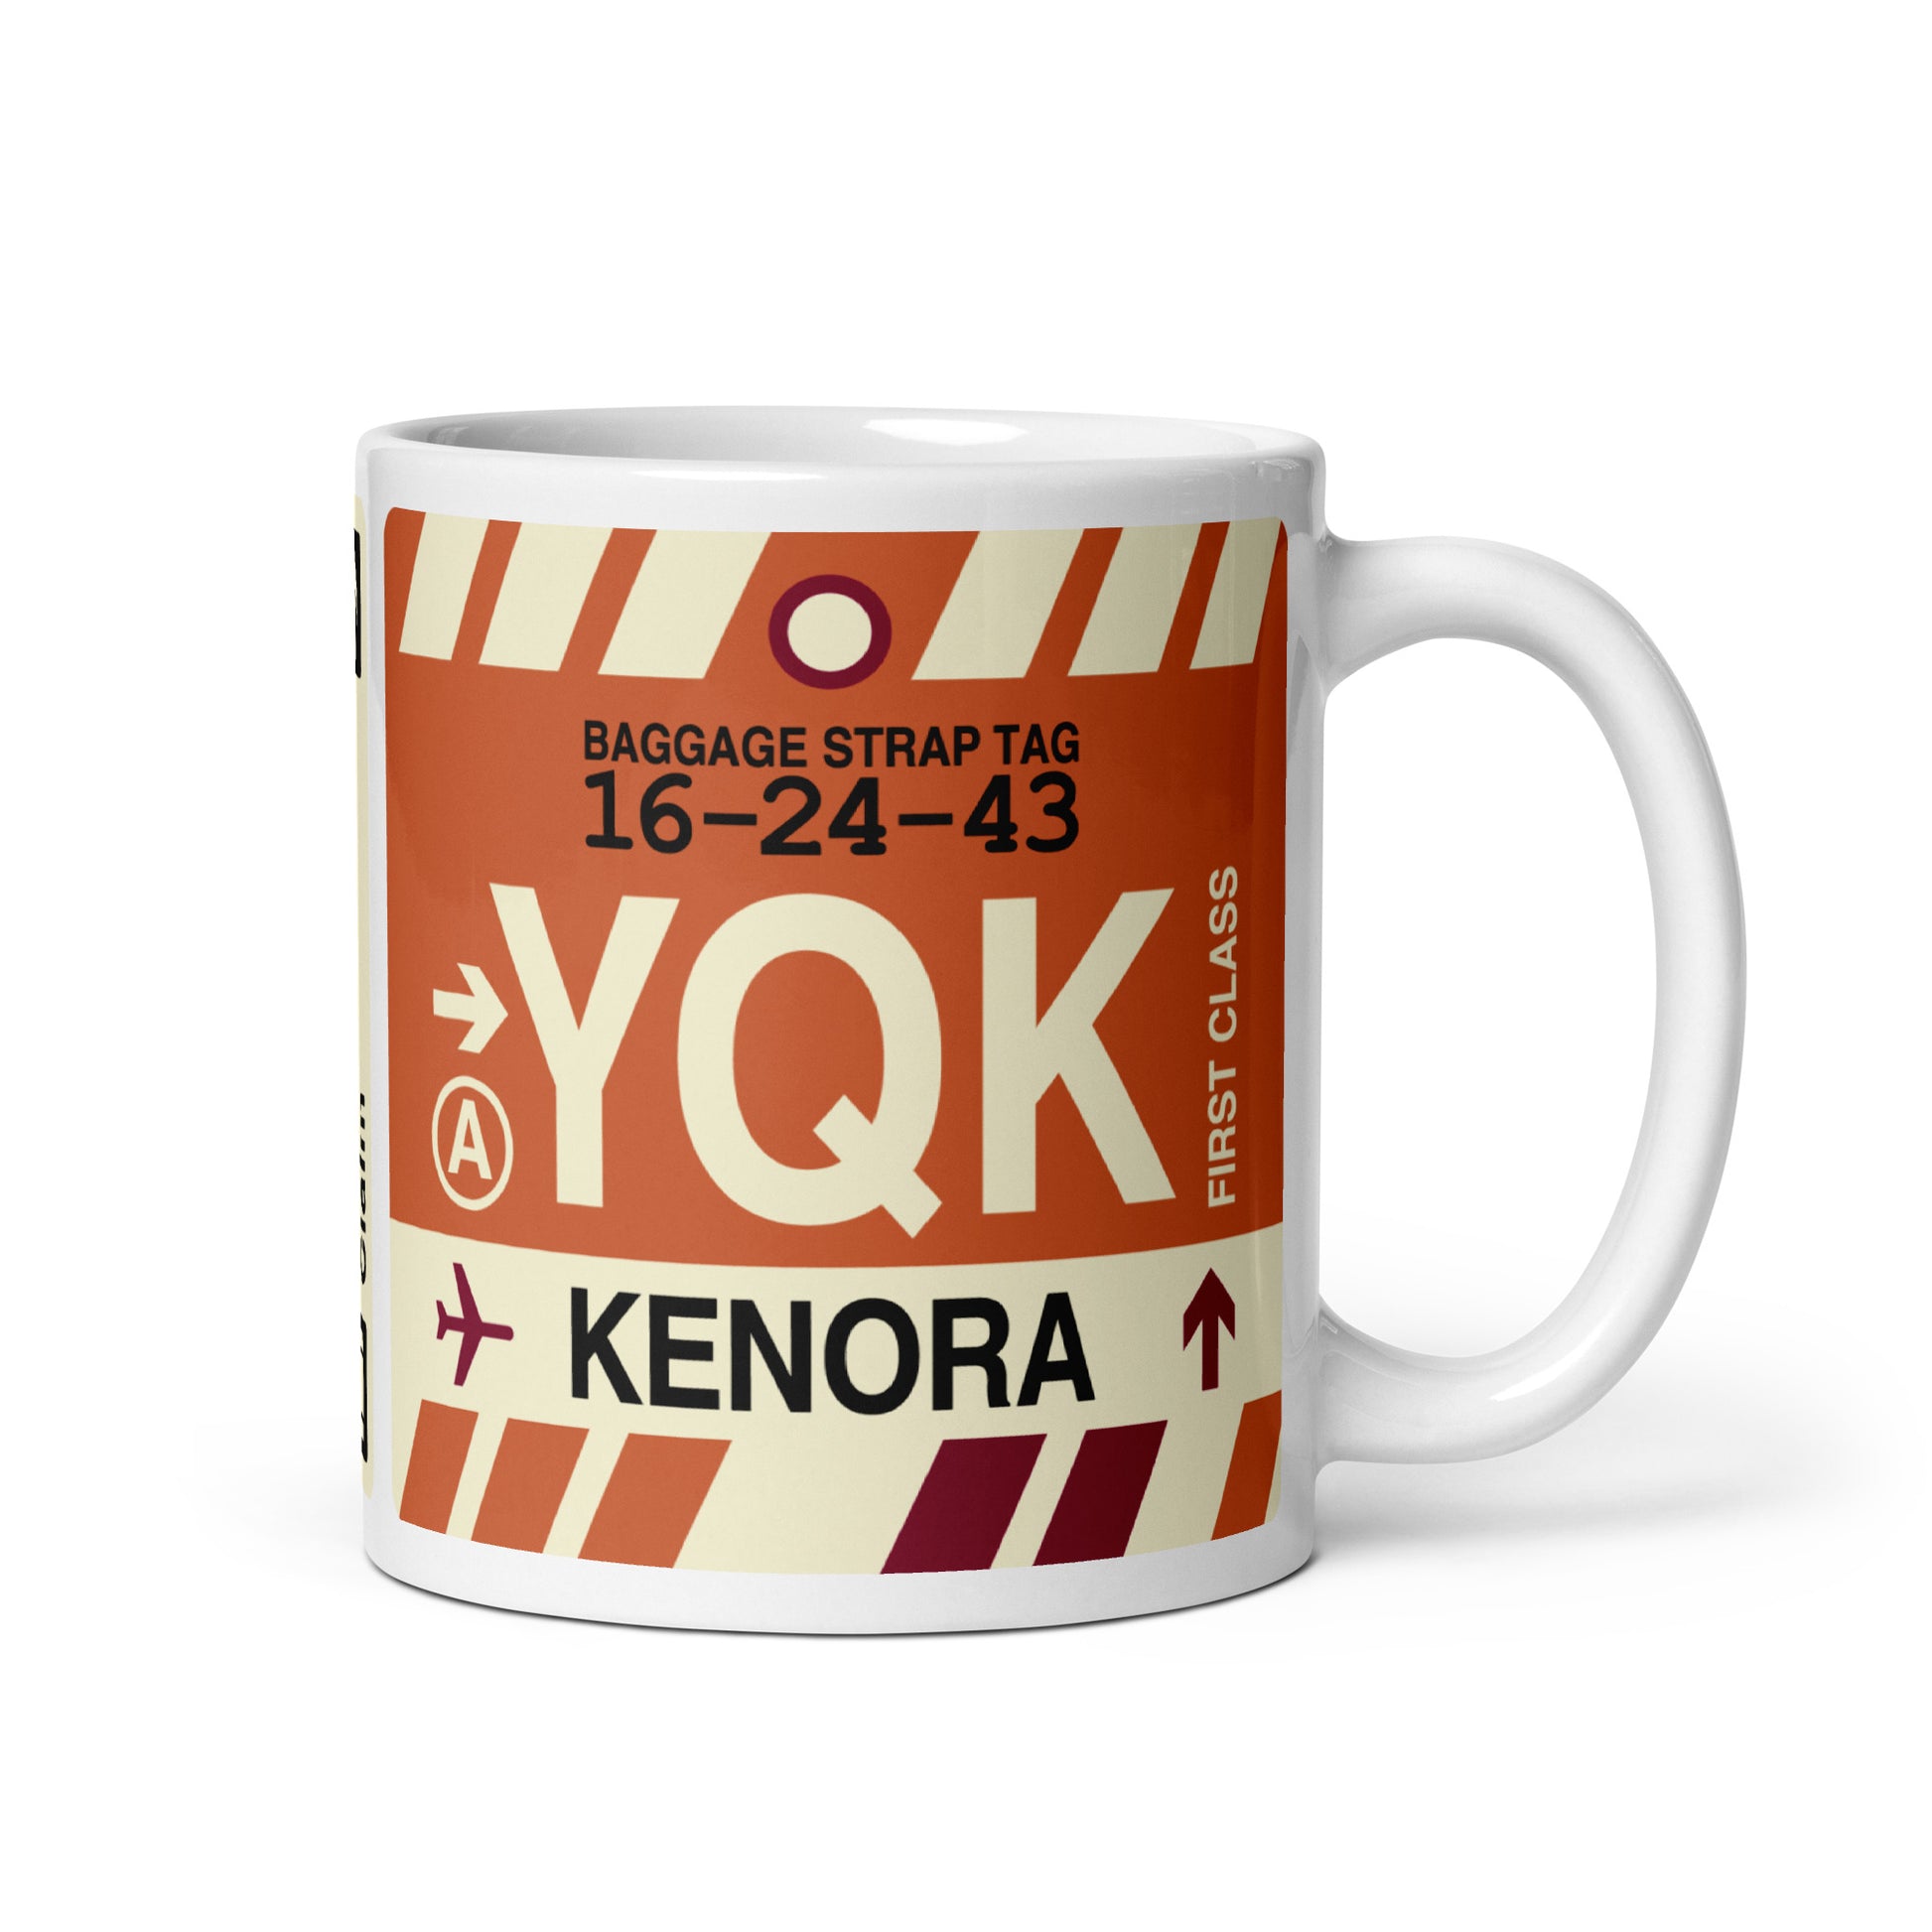 Travel Gift Coffee Mug • YQK Kenora • YHM Designs - Image 01